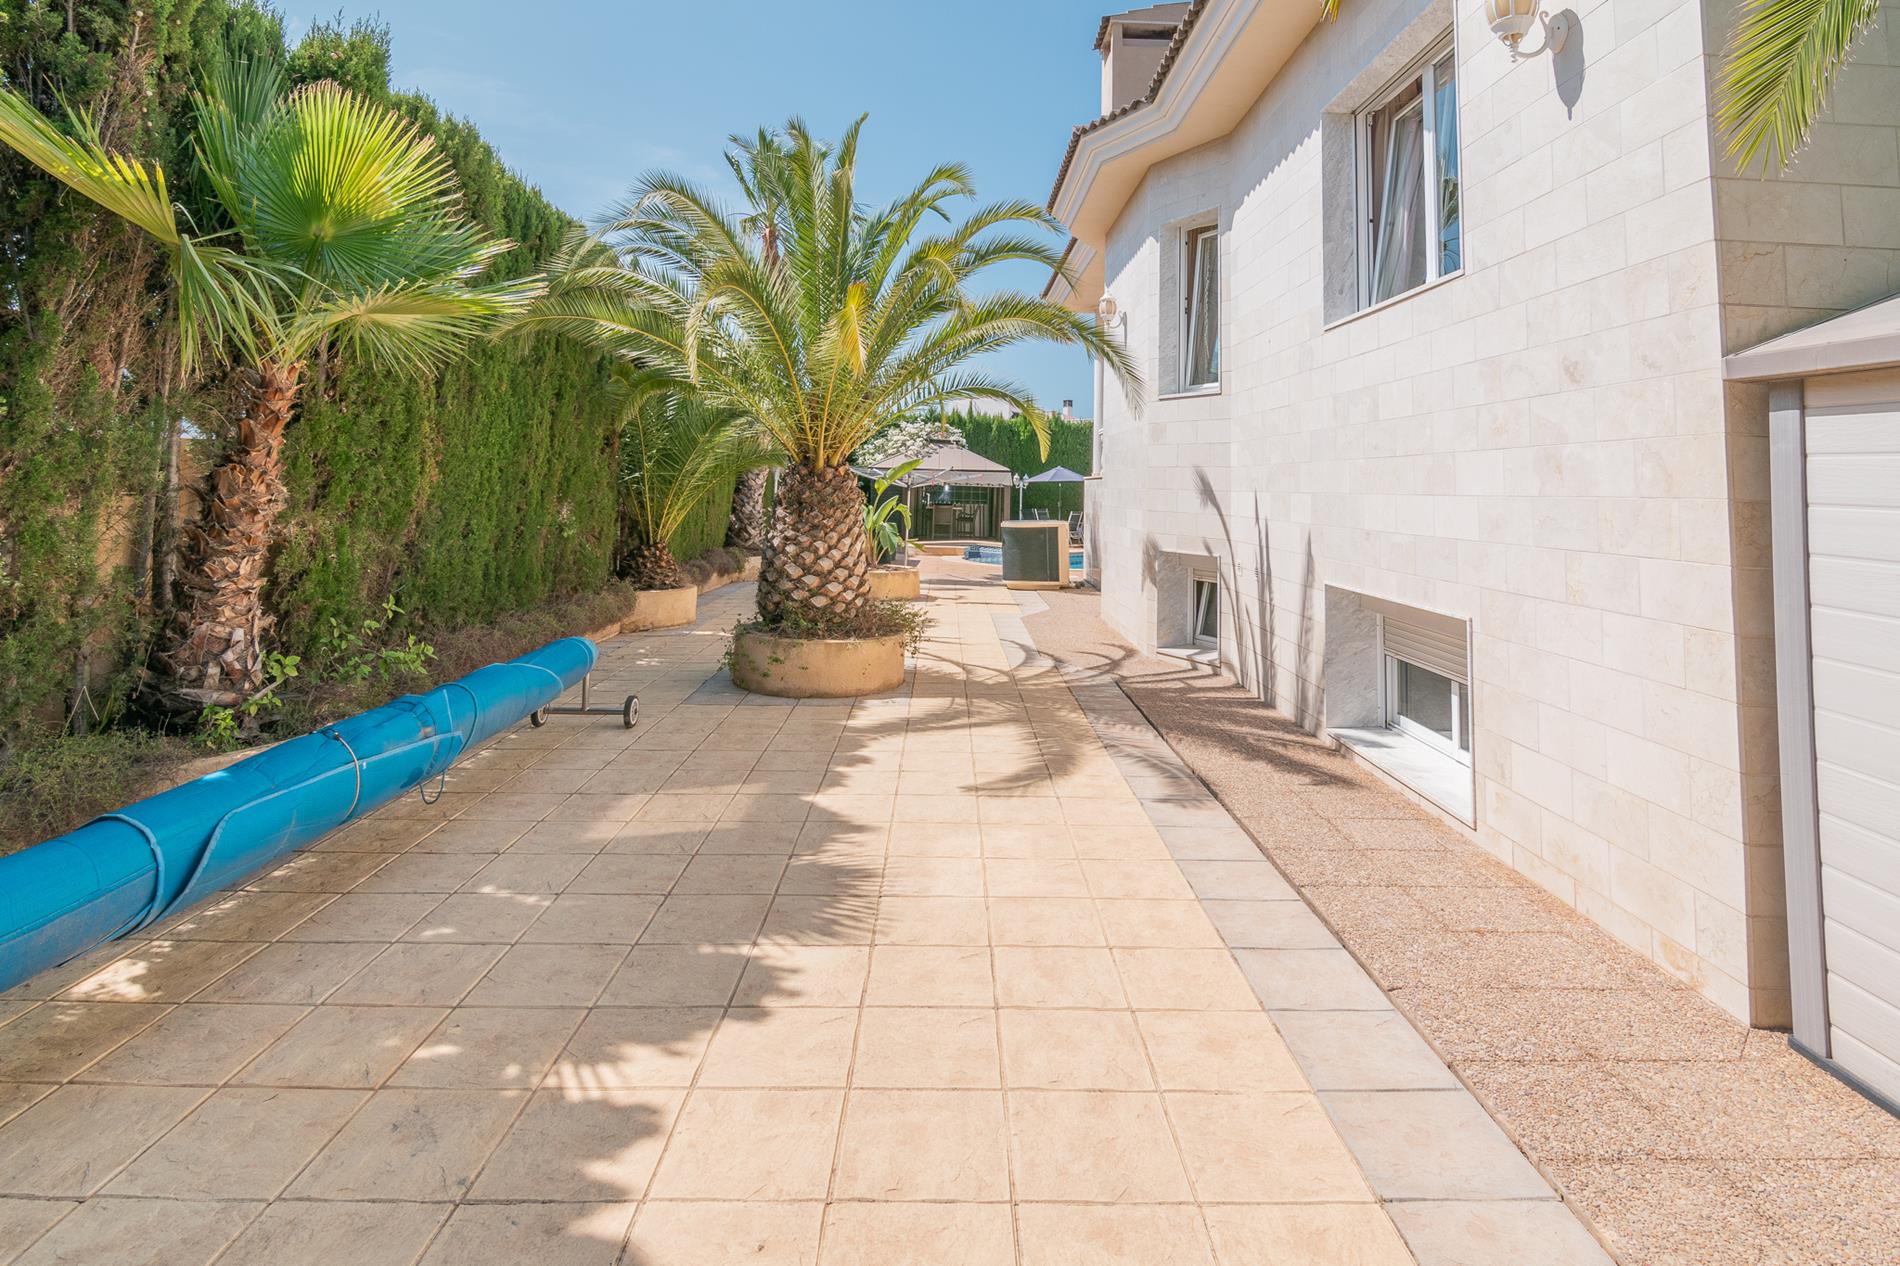 Villa zum Verkauf in Alfaz del Pi mit Garten und privatem Pool, in der Nähe des Dorfes